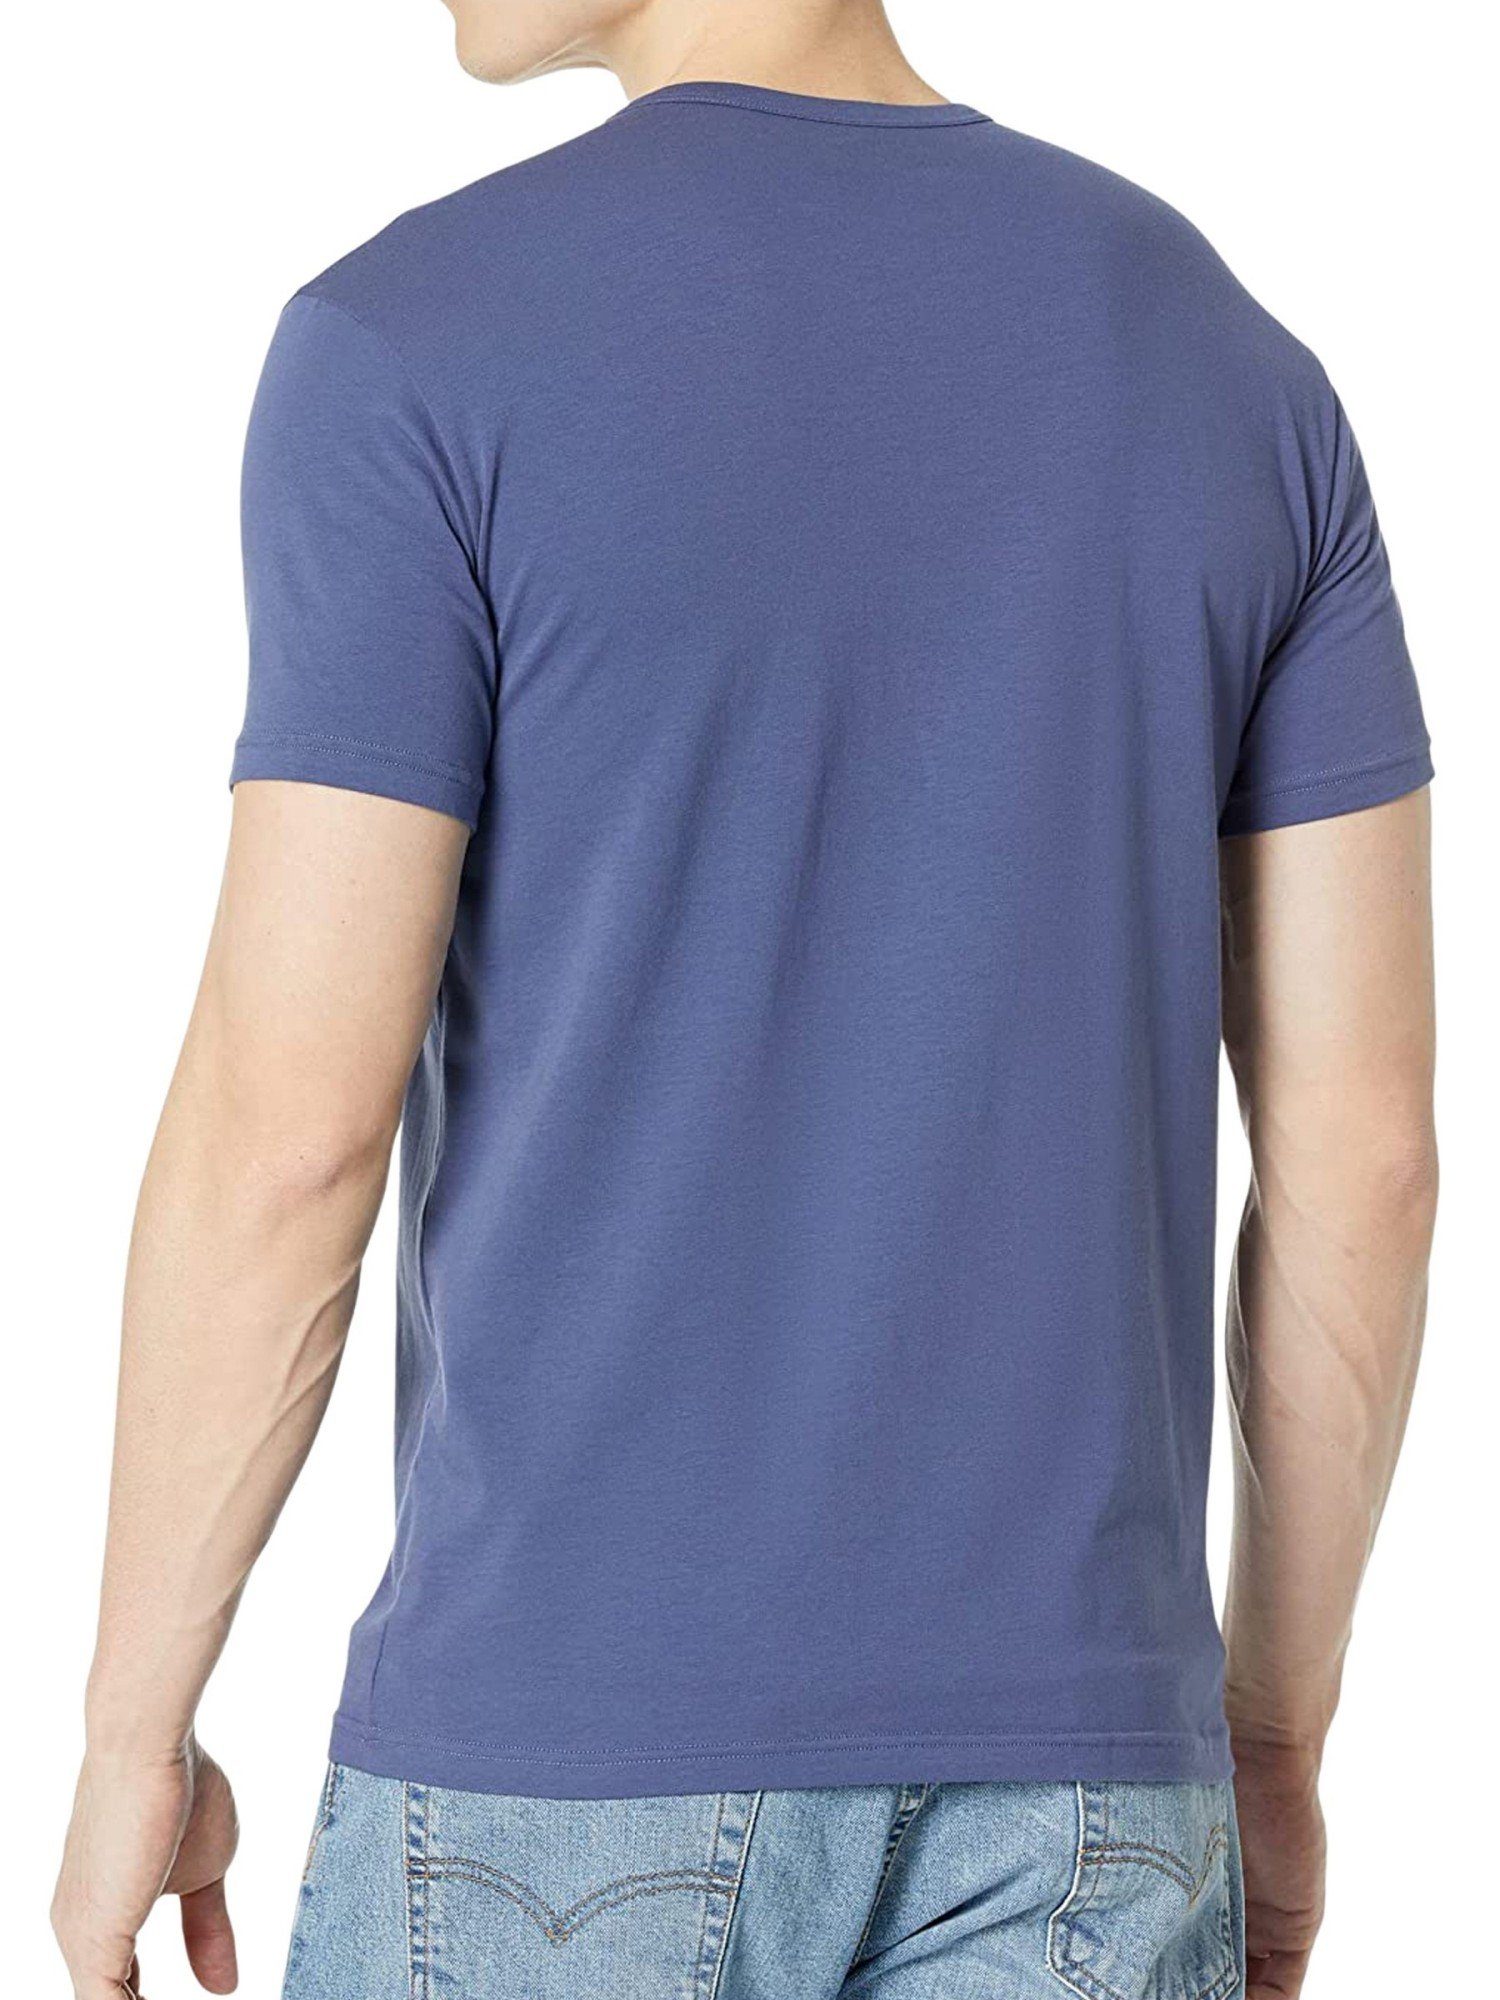 Emporio Armani T-Shirt Shirt Basic-T-Shirt im denim (2-tlg) / marine 50936 mit 2-Pack